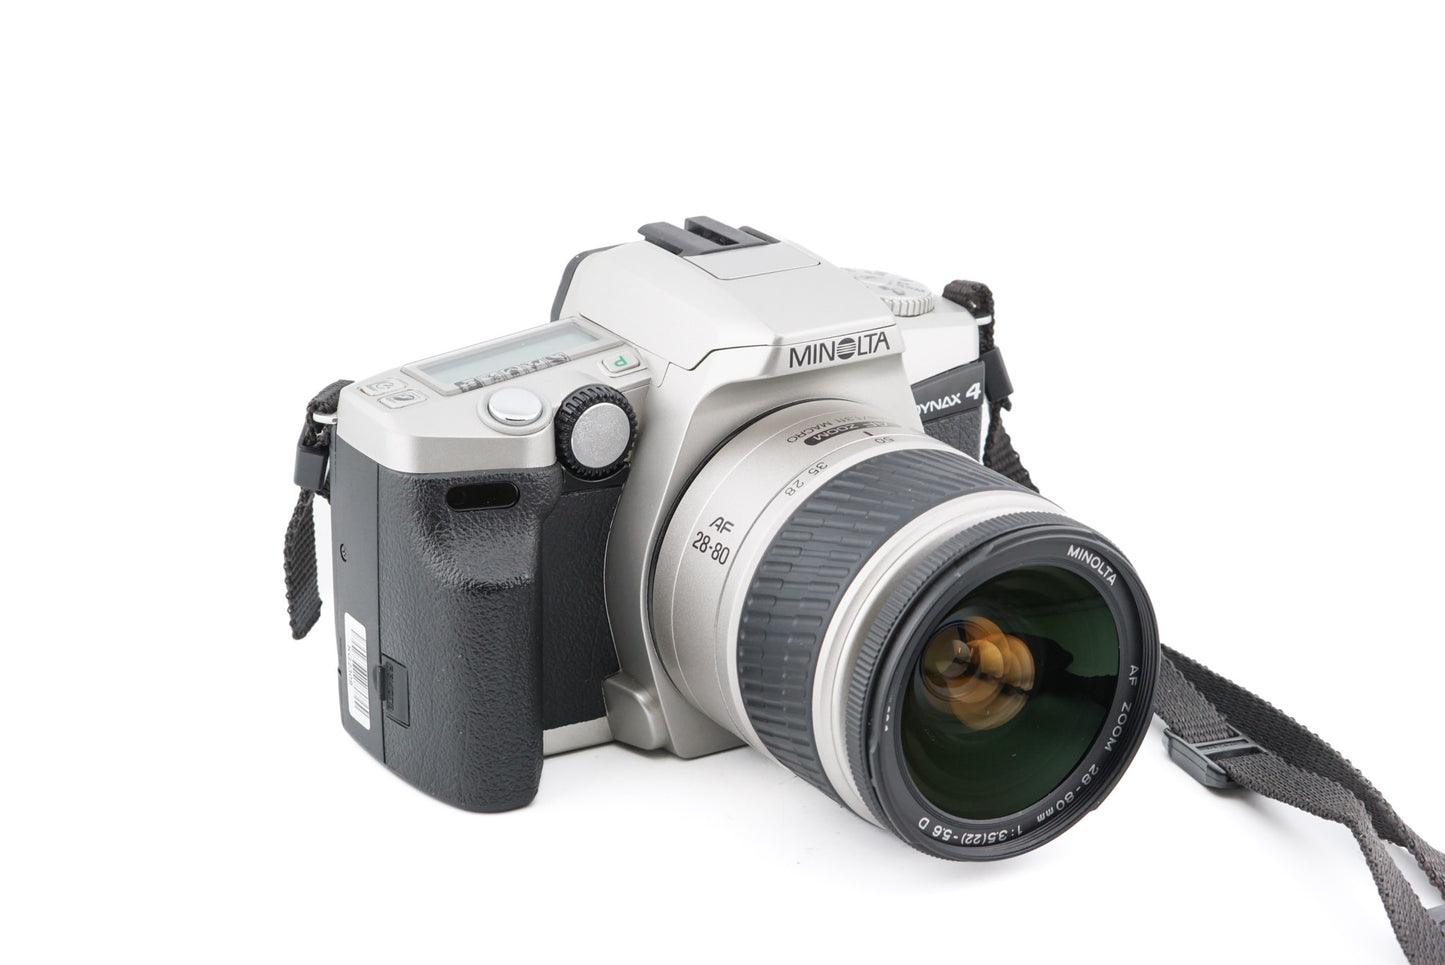 Minolta Dynax 4 + 28-80mm f3.5-5.6 AF Zoom Macro D